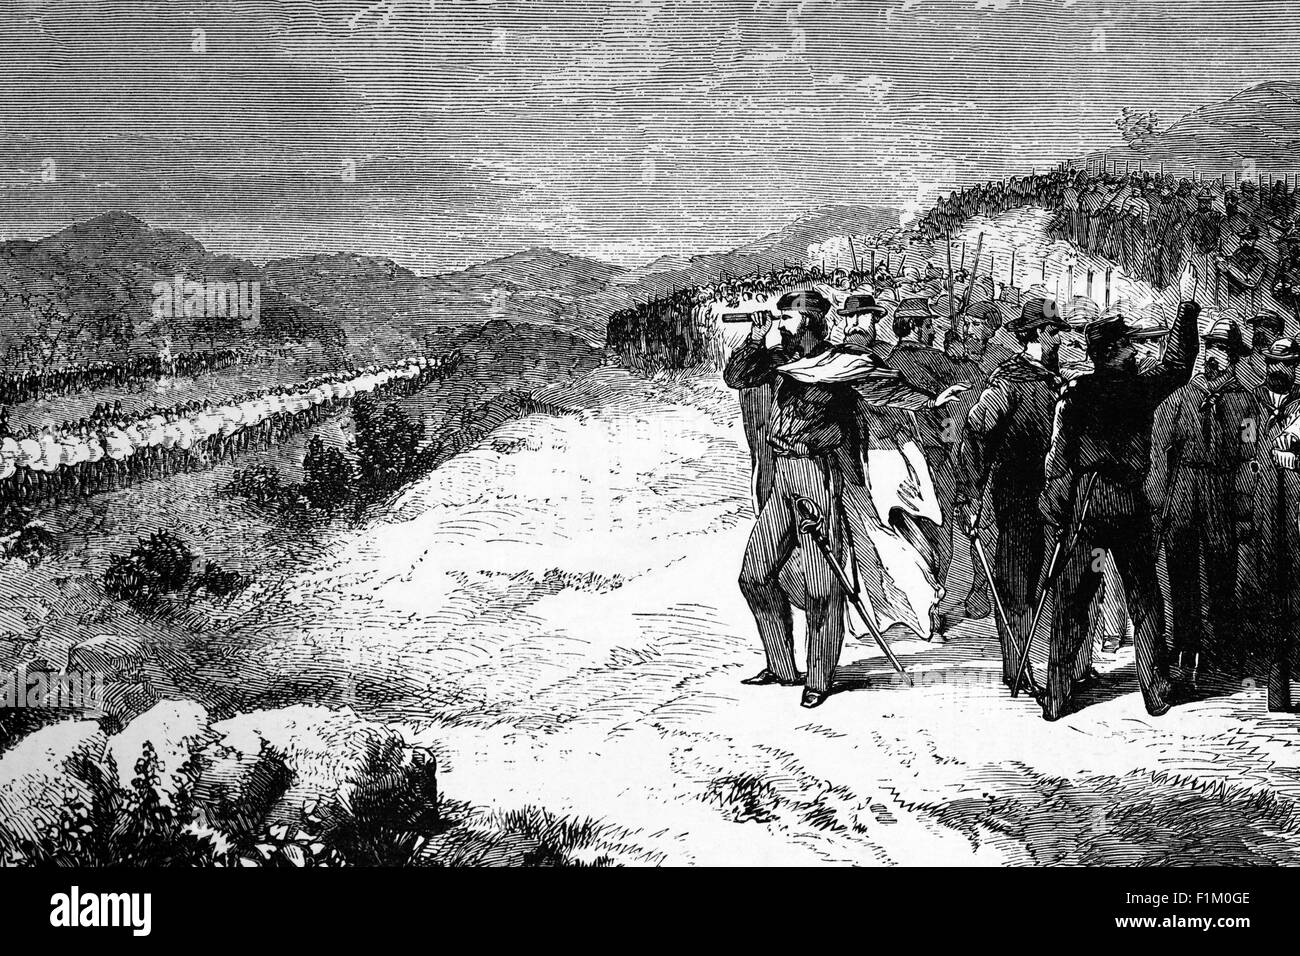 Im Jahr 1862, Giuseppe Garibaldi mit 3.000 Freiwilligen in einem marsch von Sizilien nach Rom, konfrontiert Angriff italienischen Truppen während der Schlacht von Aspromonte, eine Schlacht, die am 29. August 1862 stattfand, und war eine unschlüssige Episode des italienischen Einigungsprozesses. In der Schlacht besiegte die königliche italienische Armee Giuseppe Garibaldis Freiwilligenarmee, Garibaldi wurde verwundet und gefangen genommen, aber später freigelassen. Stockfoto